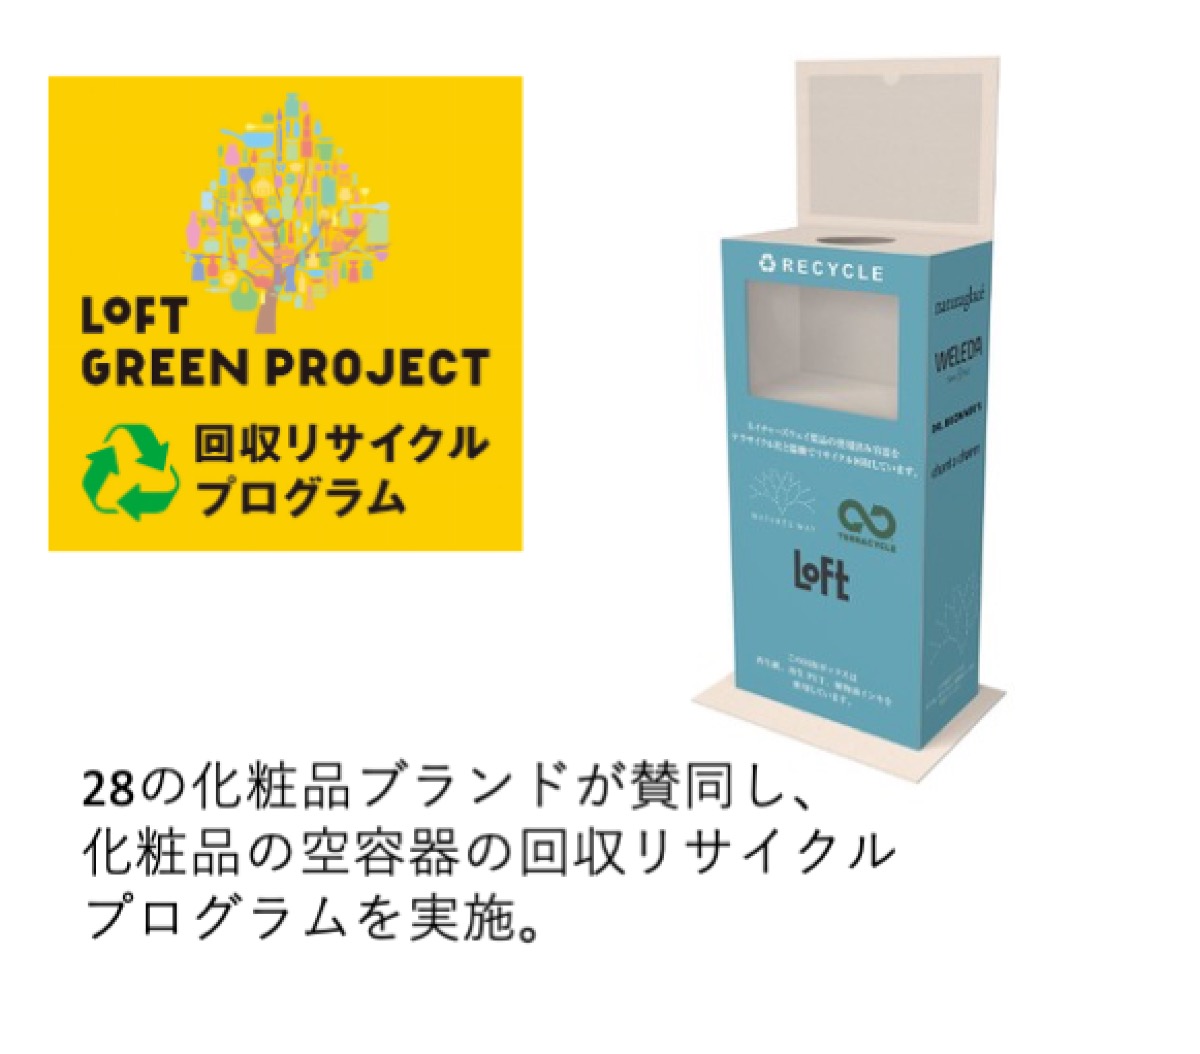 化粧品容器 28の化粧品ブランドが賛同し、化粧品の空容器の回収リサイクルプログラムを実施。